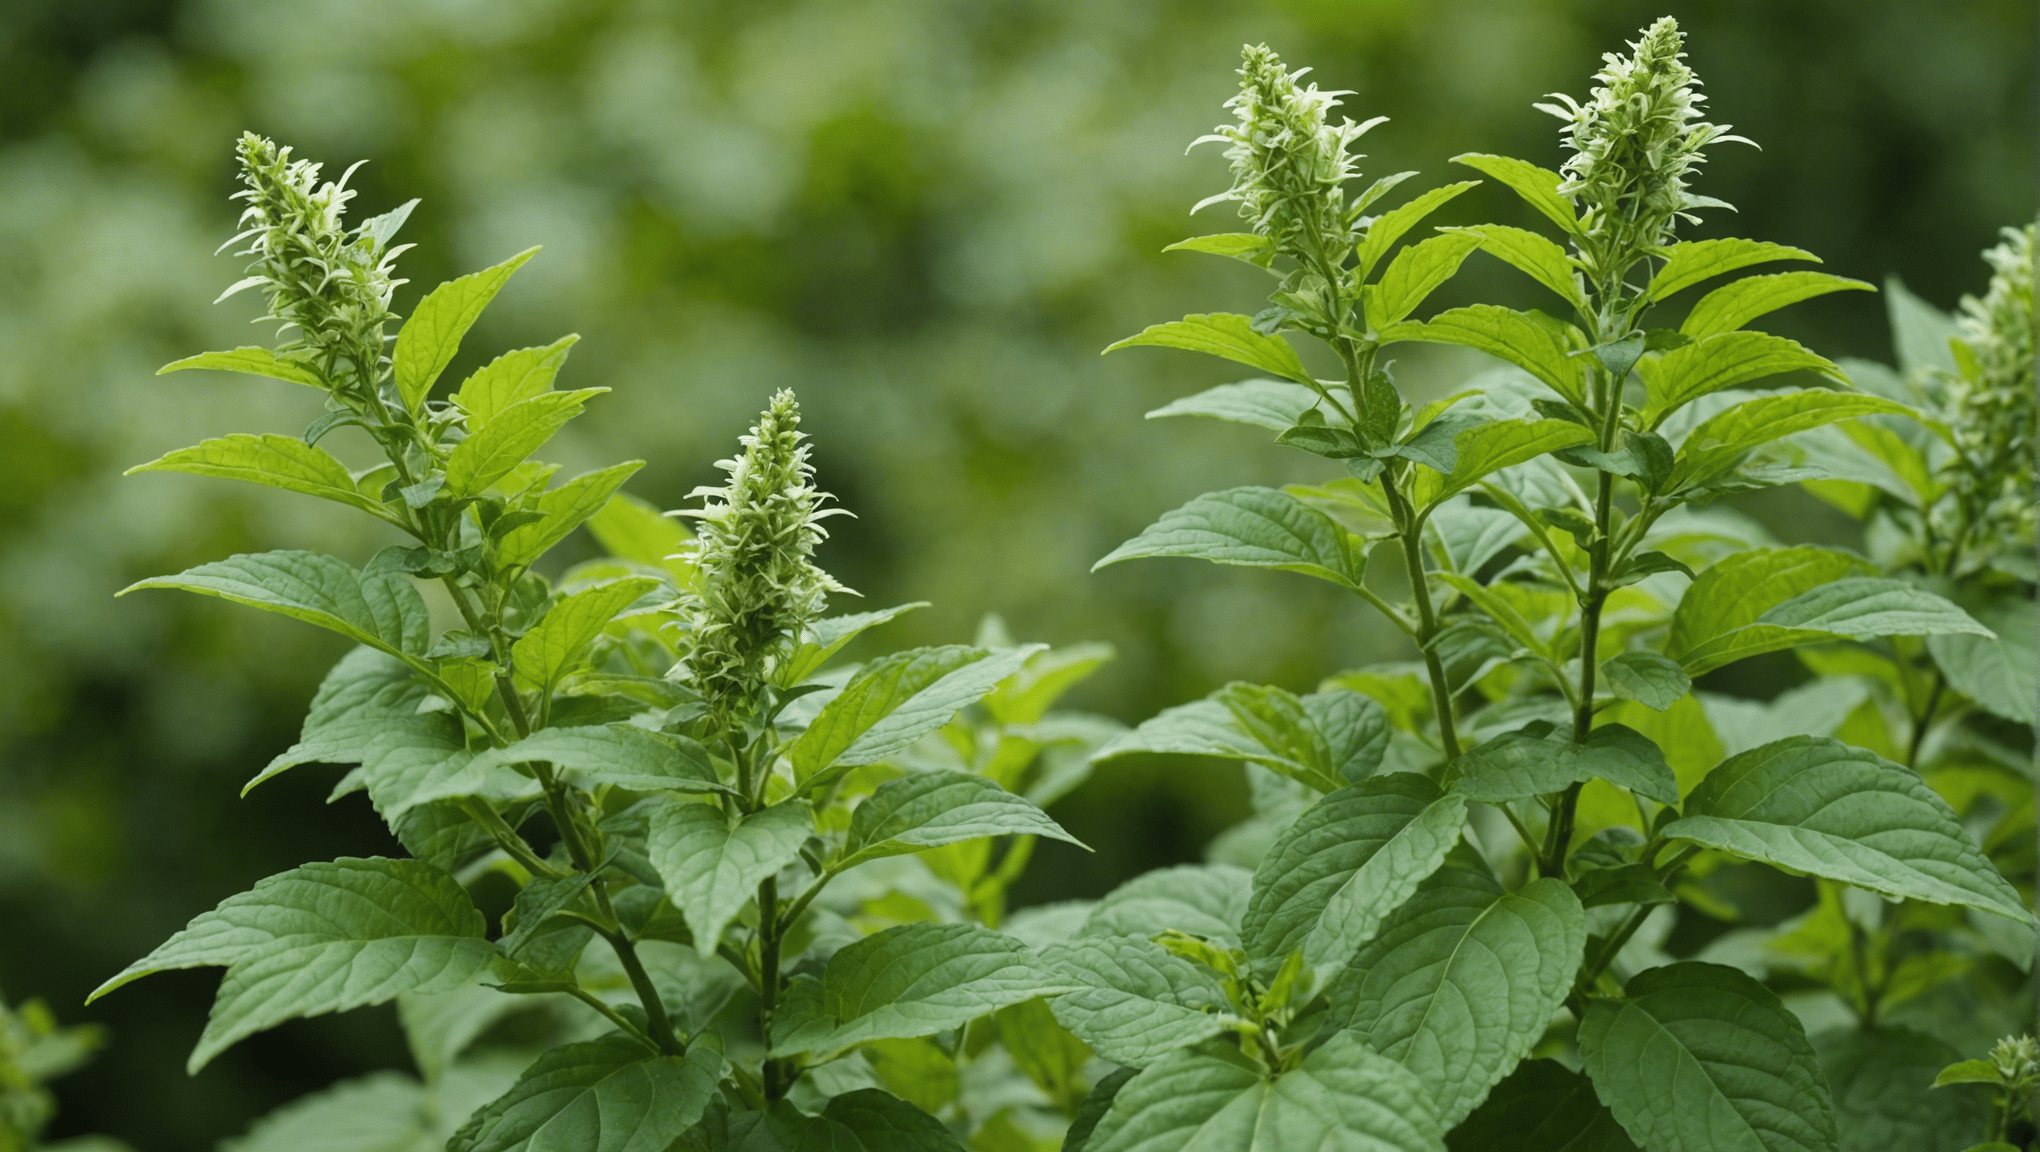 découvrez les avantages du tulsi bio et les raisons de choisir cette option pour bénéficier des propriétés naturelles de cette plante sacrée indienne.